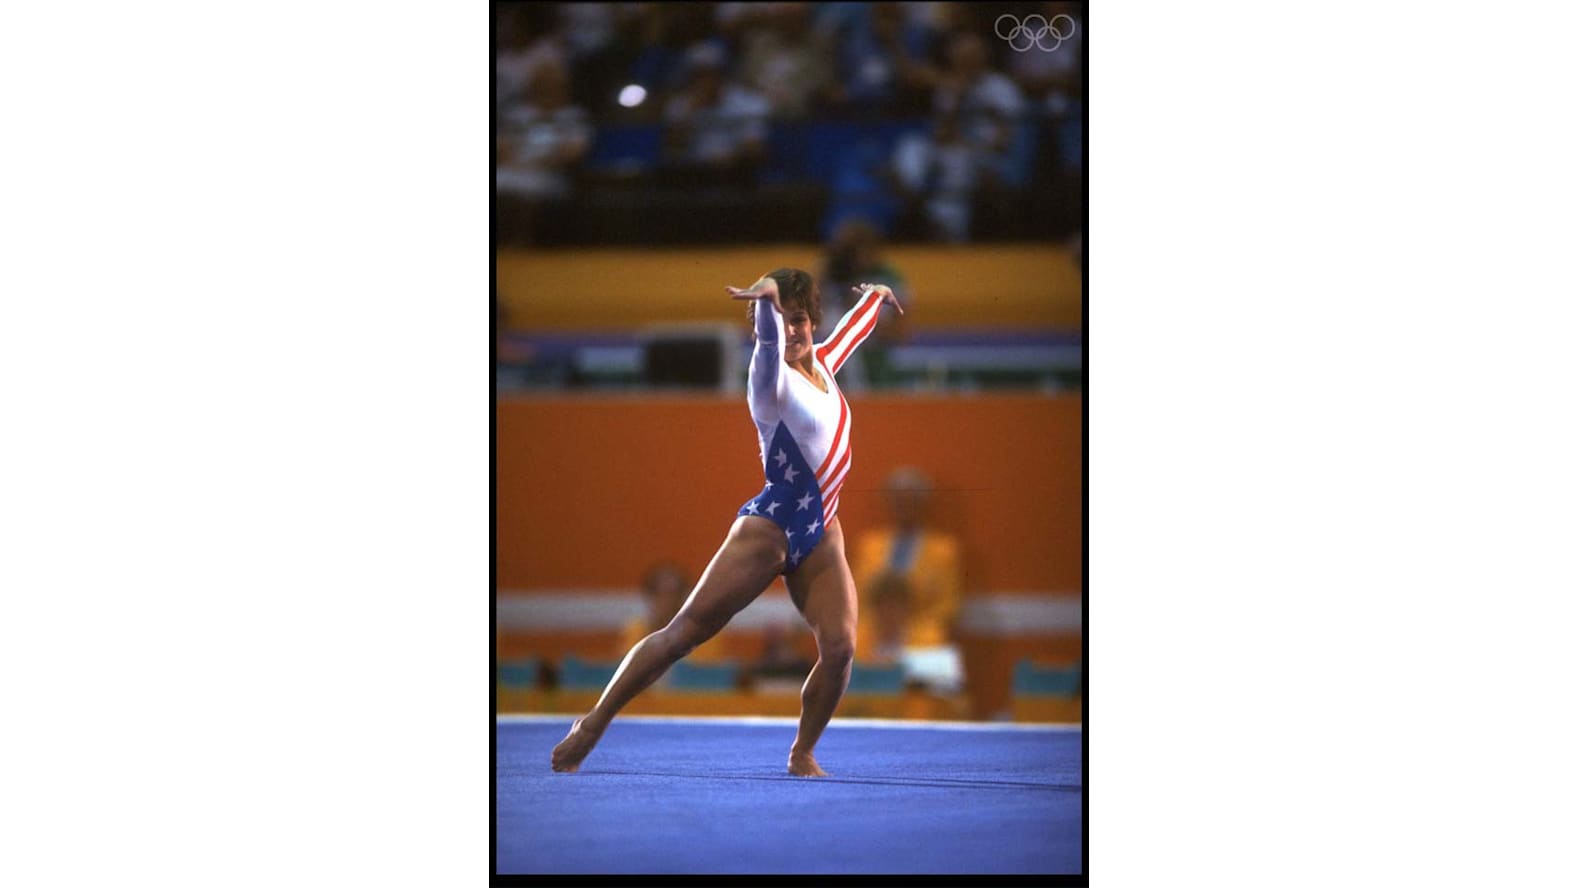 ロサンゼルス1984 夏季オリンピック - アスリート、メダル、結果